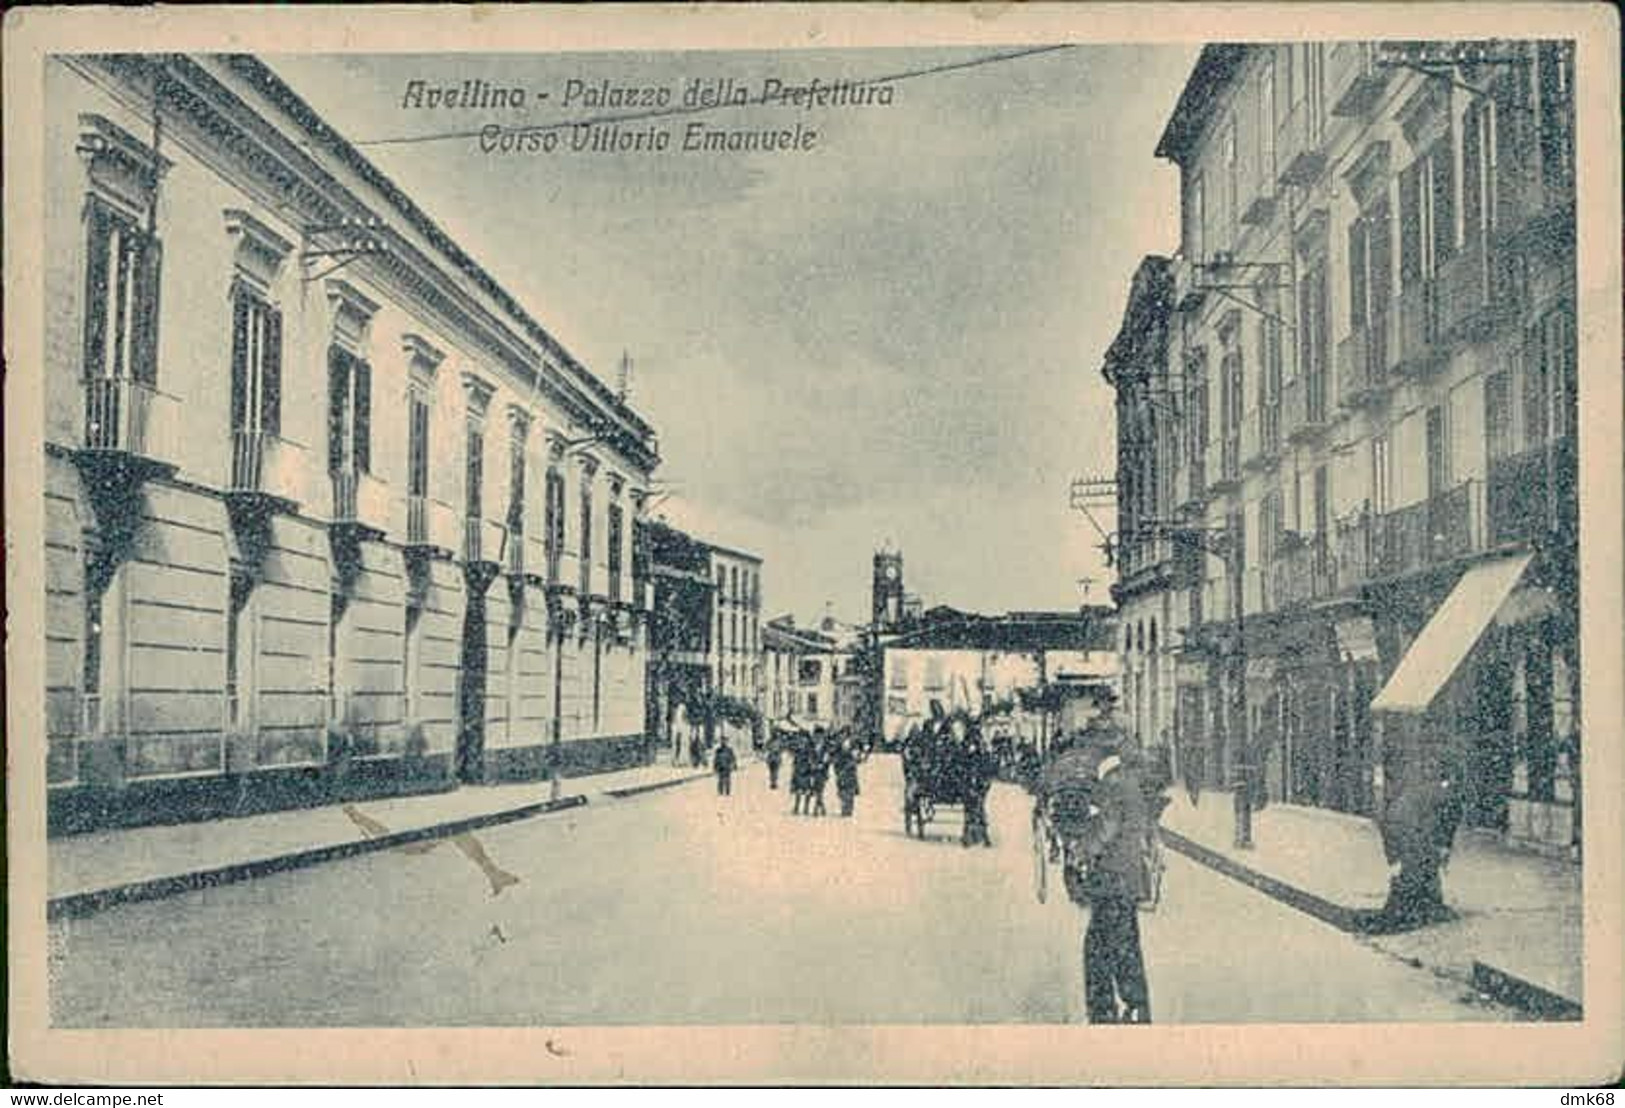 AVELLINO - PALAZZO DELLA PREFETTURA - CORSO VITTORIO EMANUELE - EDIZ. CESA - SPEDITA 1920 (12693) - Avellino